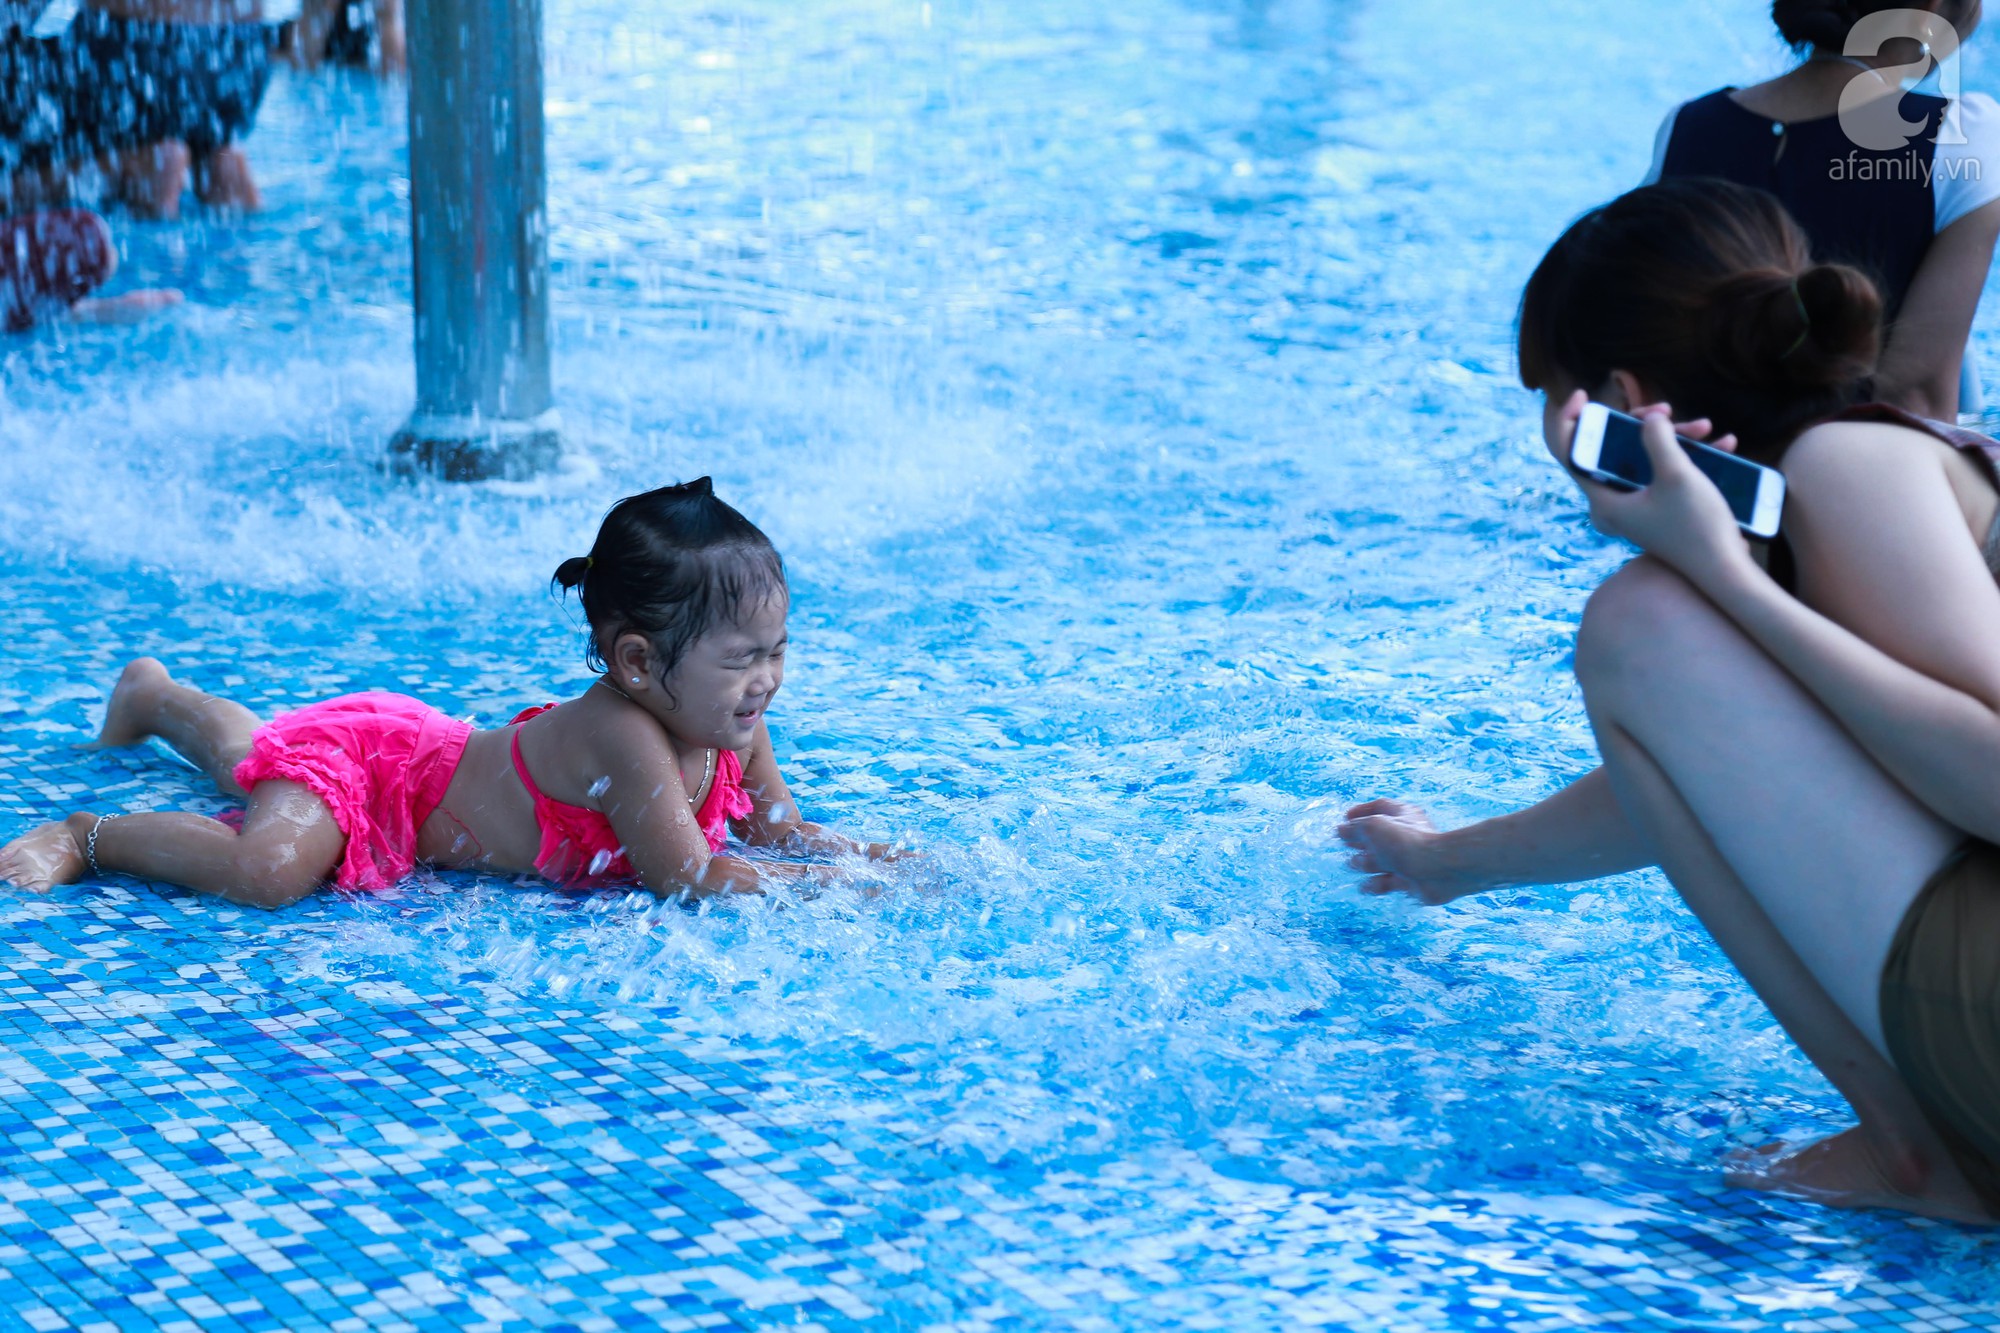 Chùm ảnh: Dân tình thỏa sức vùng vẫy giải nhiệt tại “bể bơi” lớn nhất Hà Nội - Ảnh 6.